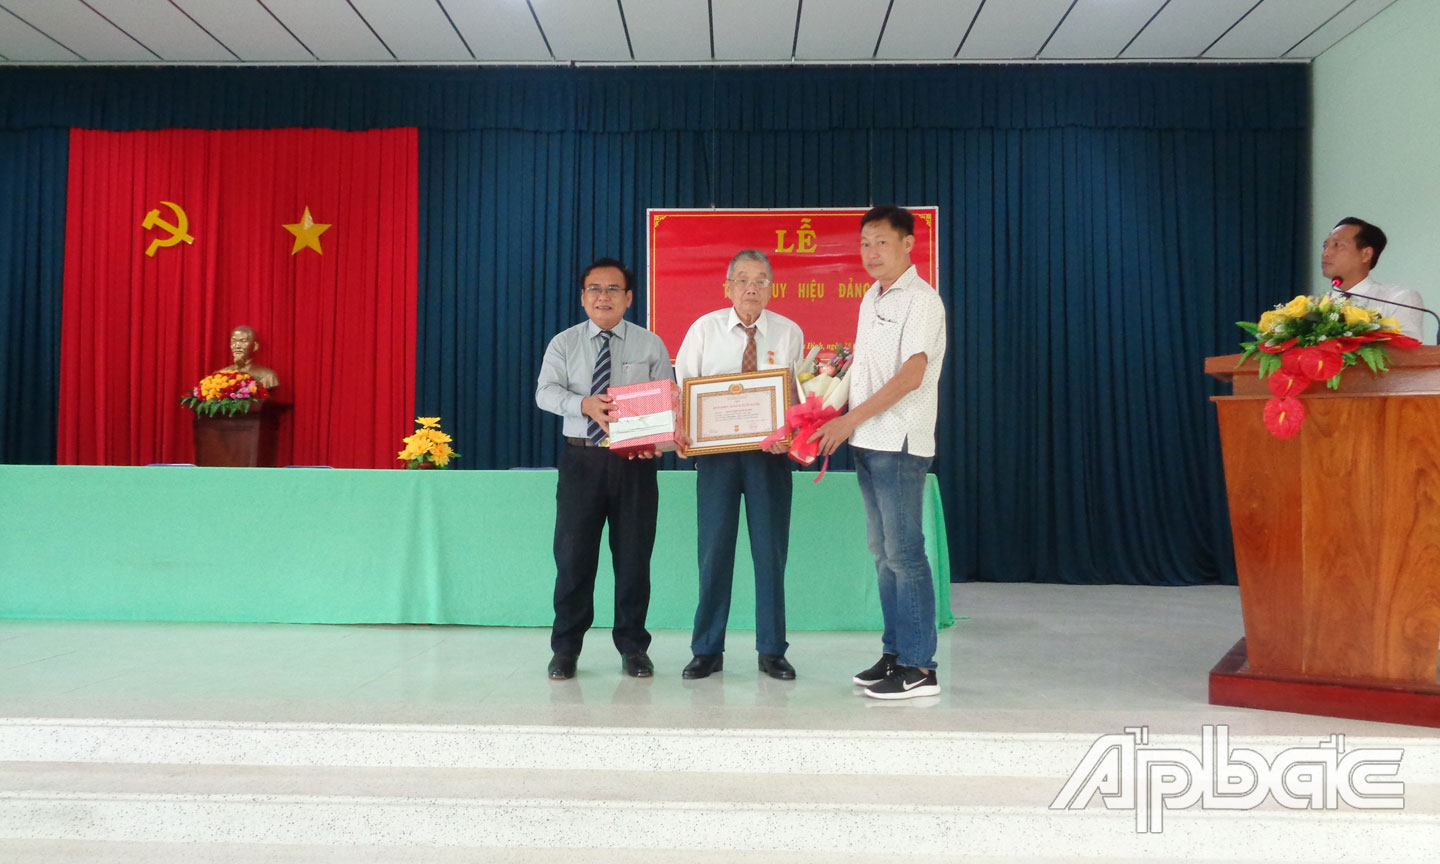 Đồng chí Võ Văn Bình trao Huy hiệu 70 năm tuổi Đảng cho đồng chí Nguyễn Văn Bang.